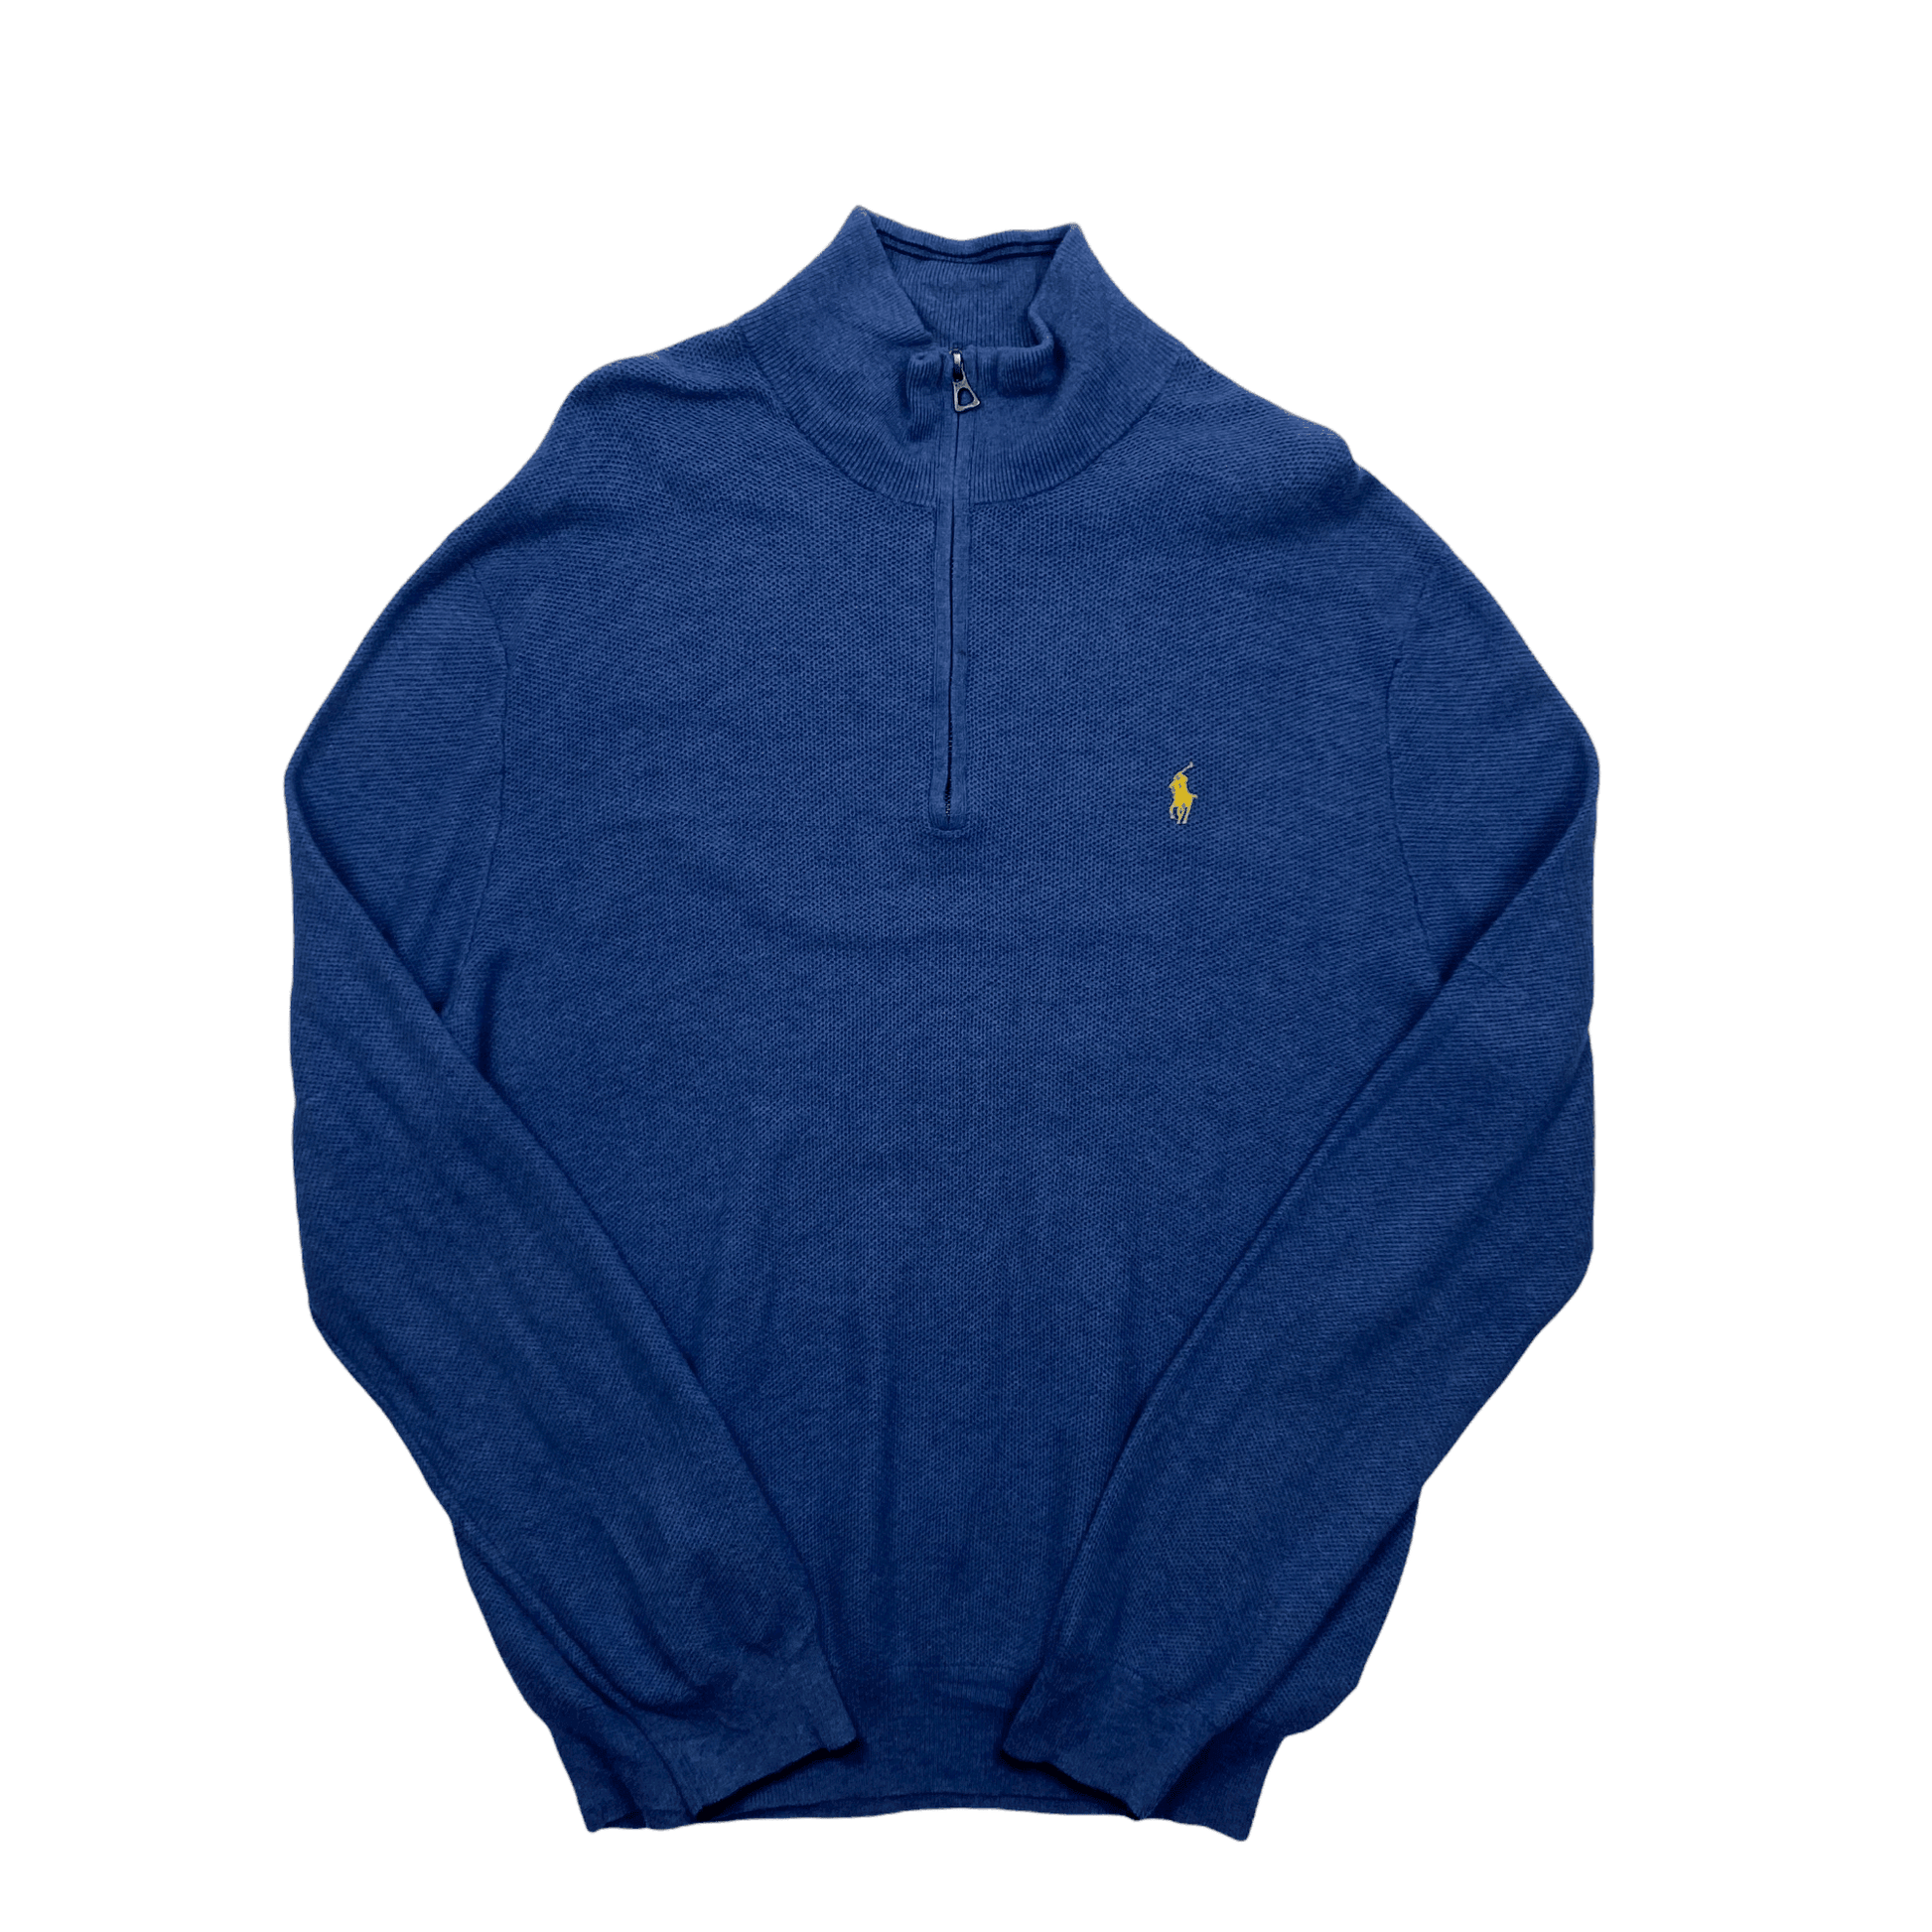 Vintage 90s Blue Polo Ralph Lauren Quarter Zip Sweatshirt - Extra Large - The Streetwear Studio